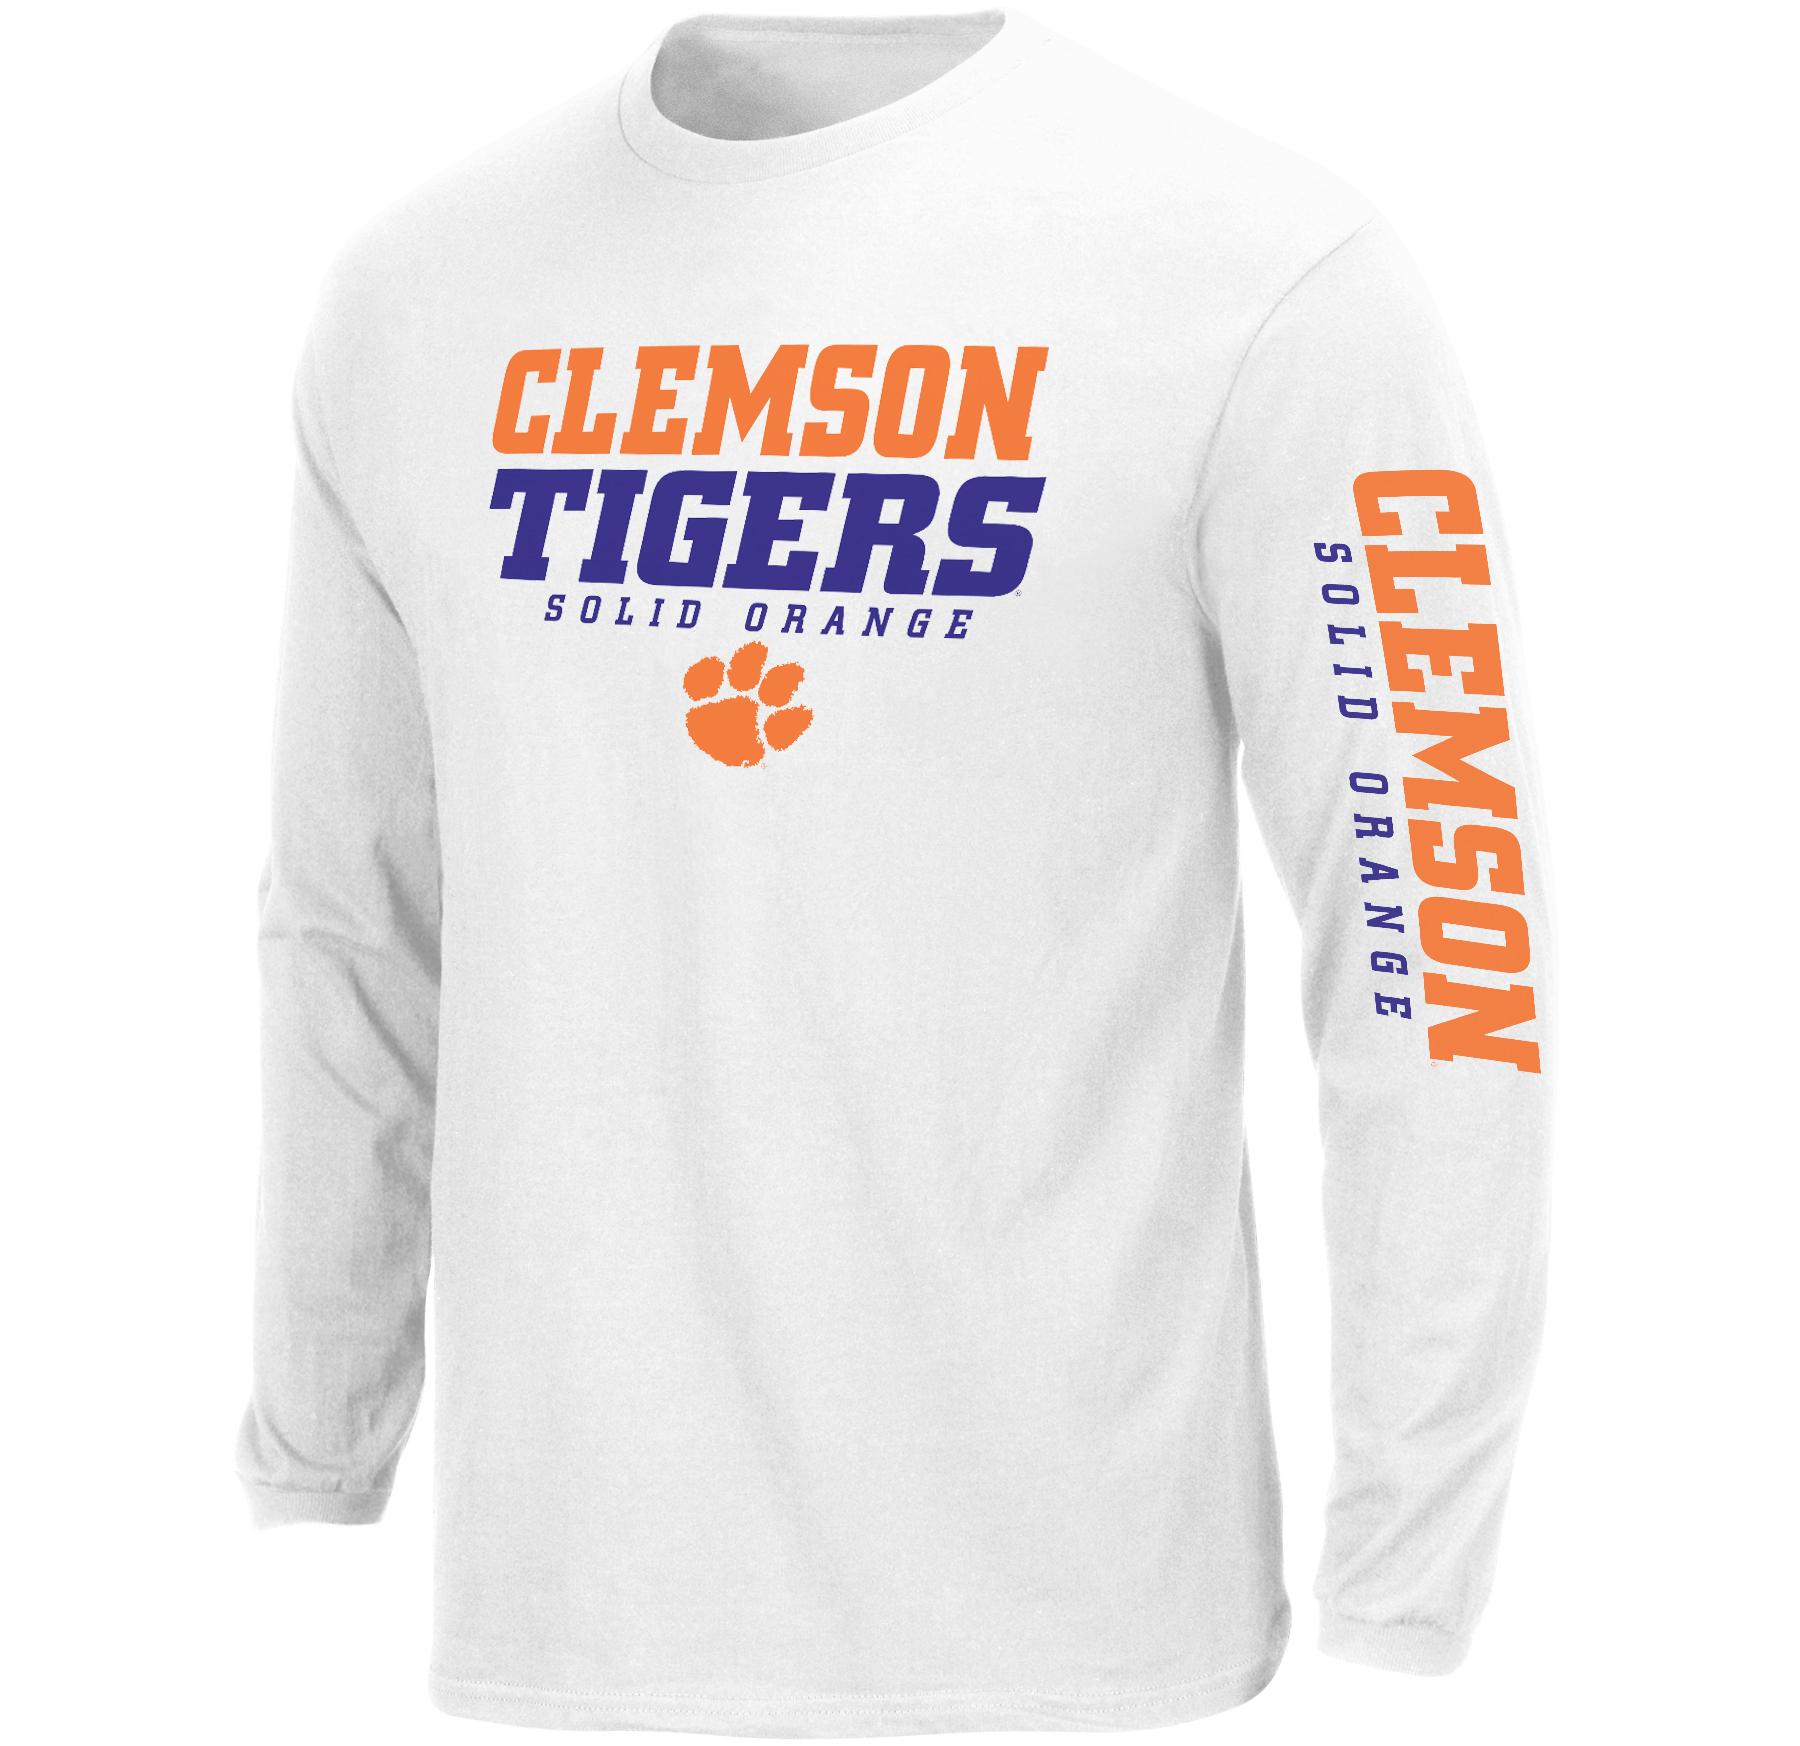 NCAA Men's Big & Tall Long-Sleeve T-Shirt - Clemson Tigers